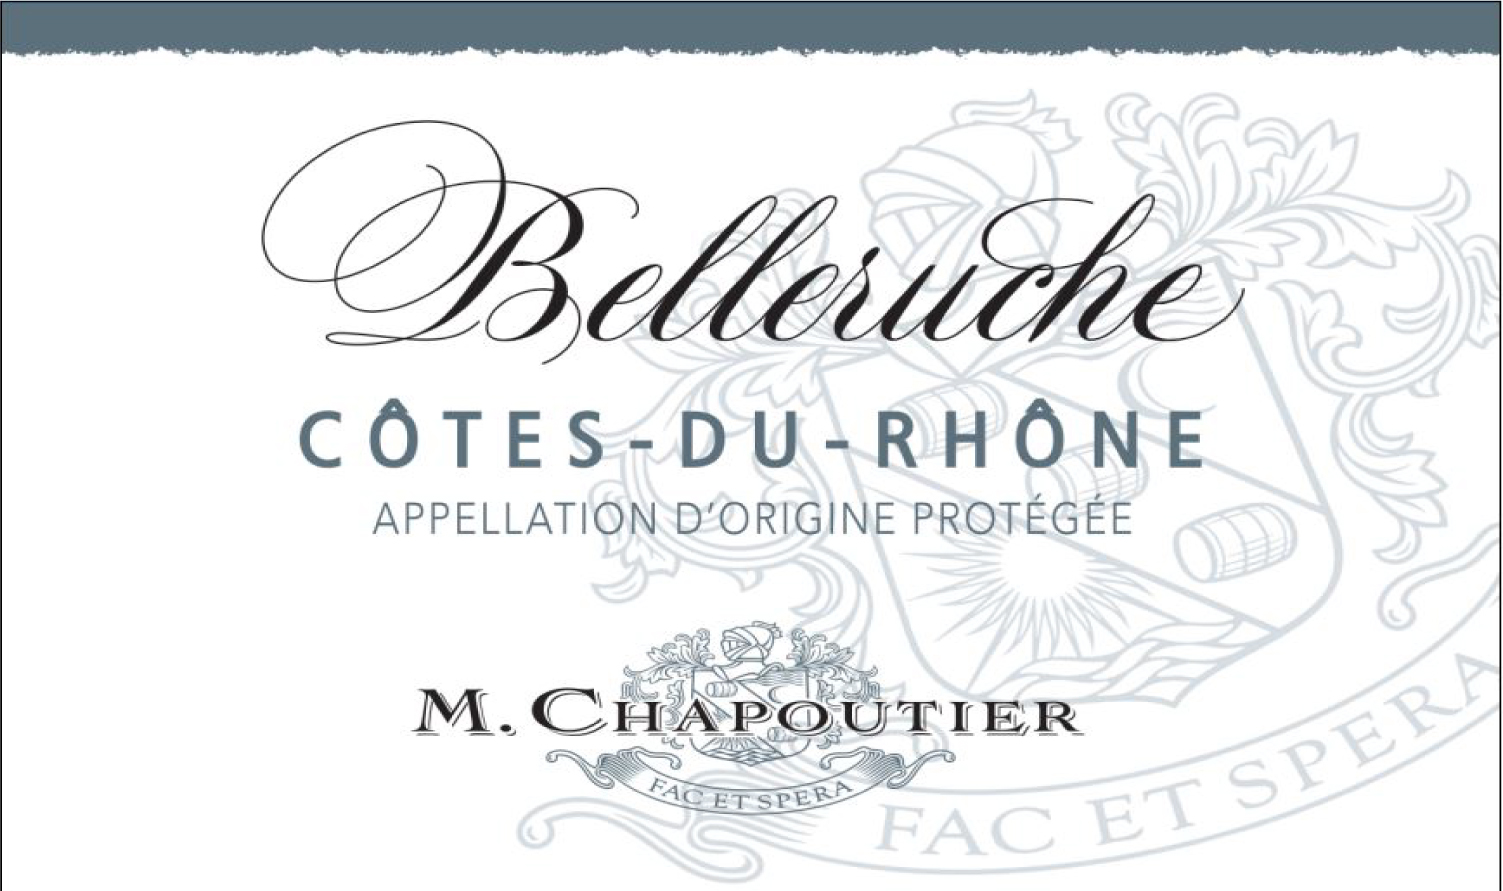 M. Chapoutier - Cotes-du-Rhone Belleruche Blanc label